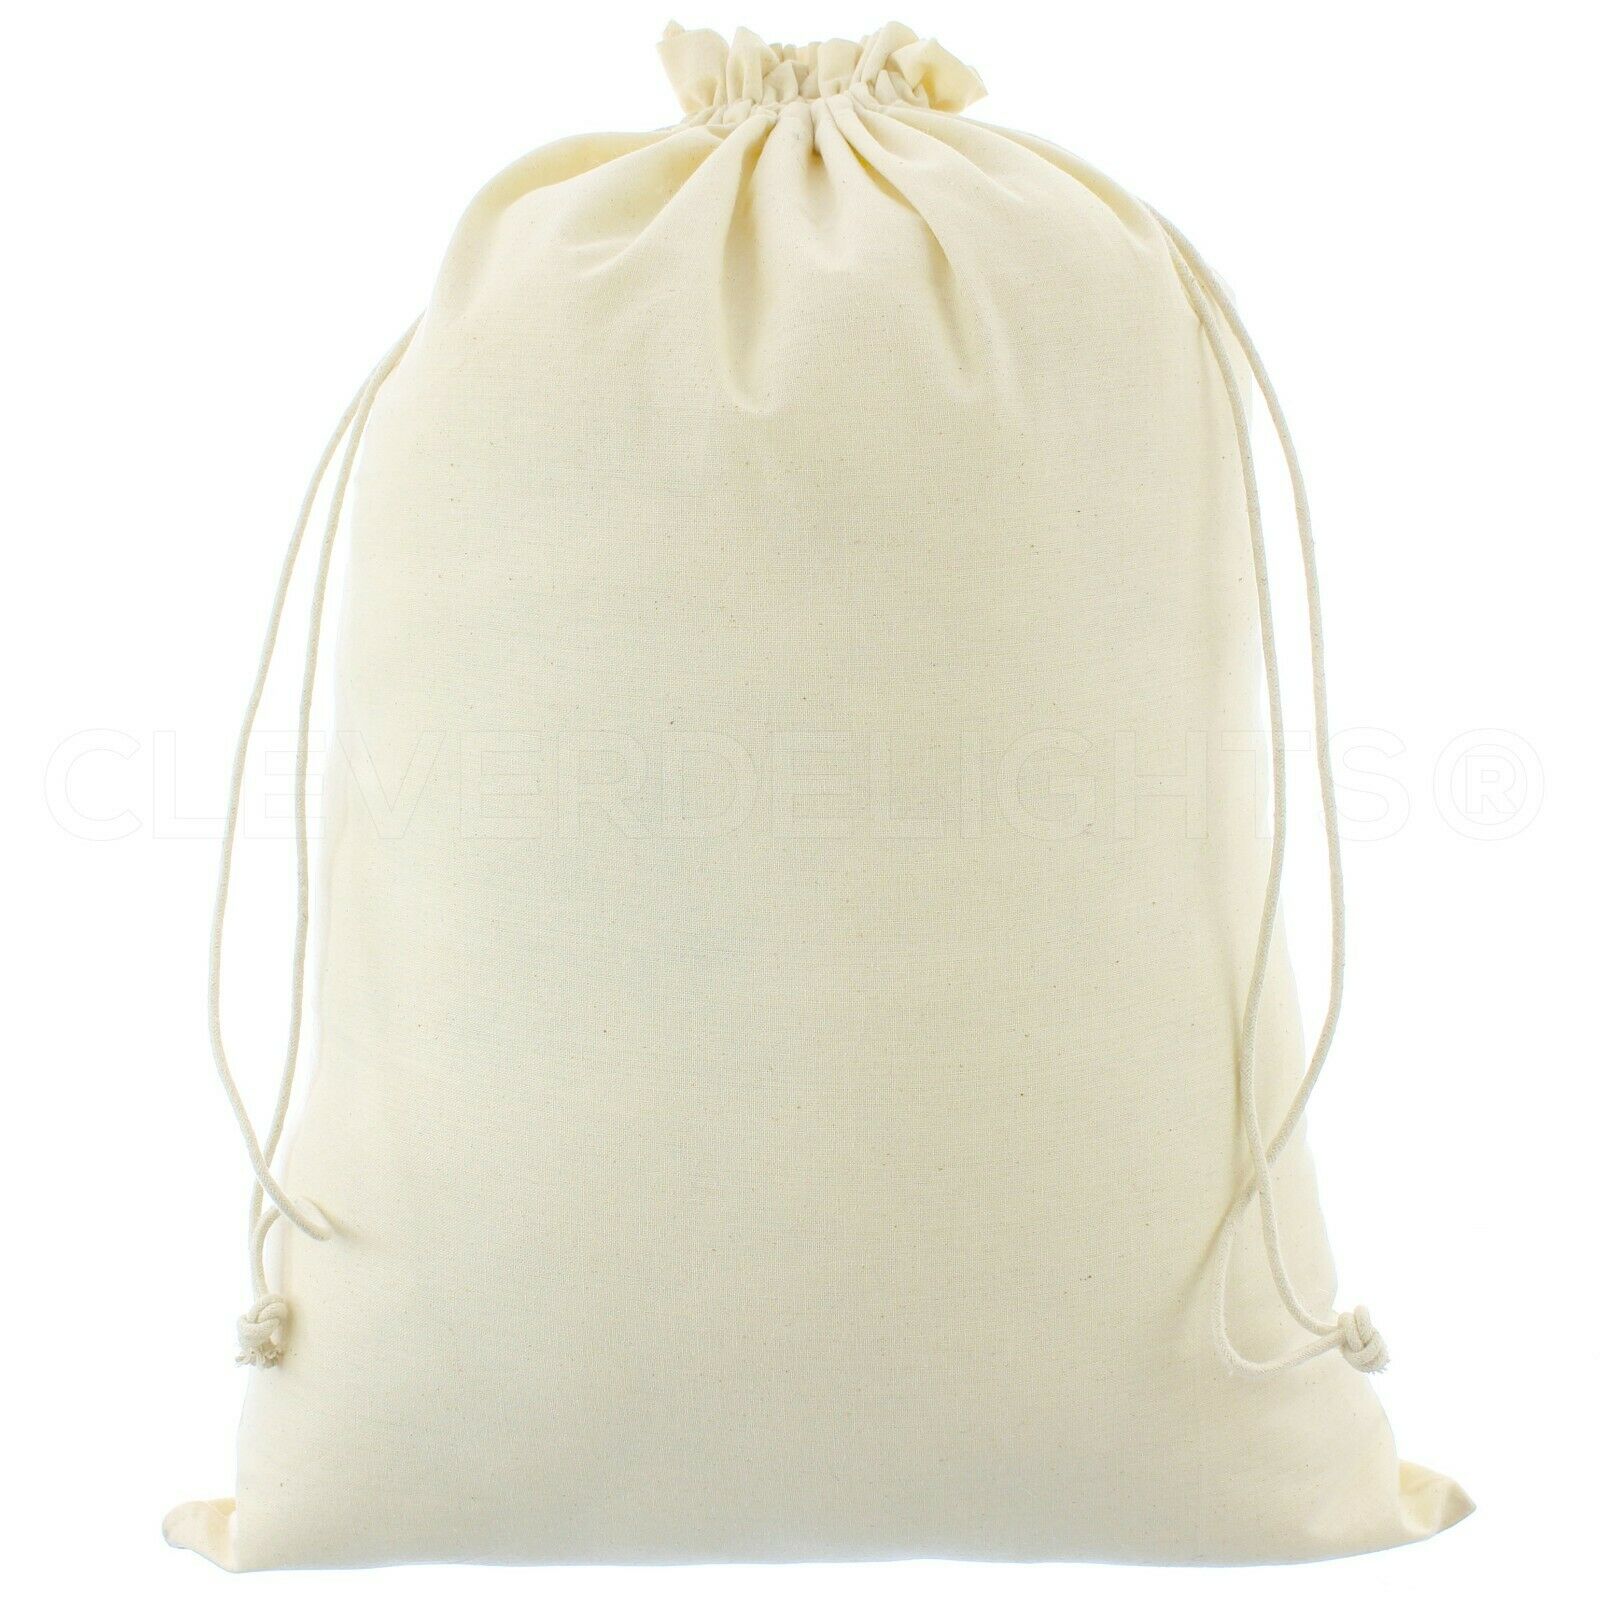 Premium Cotton Bags - 14